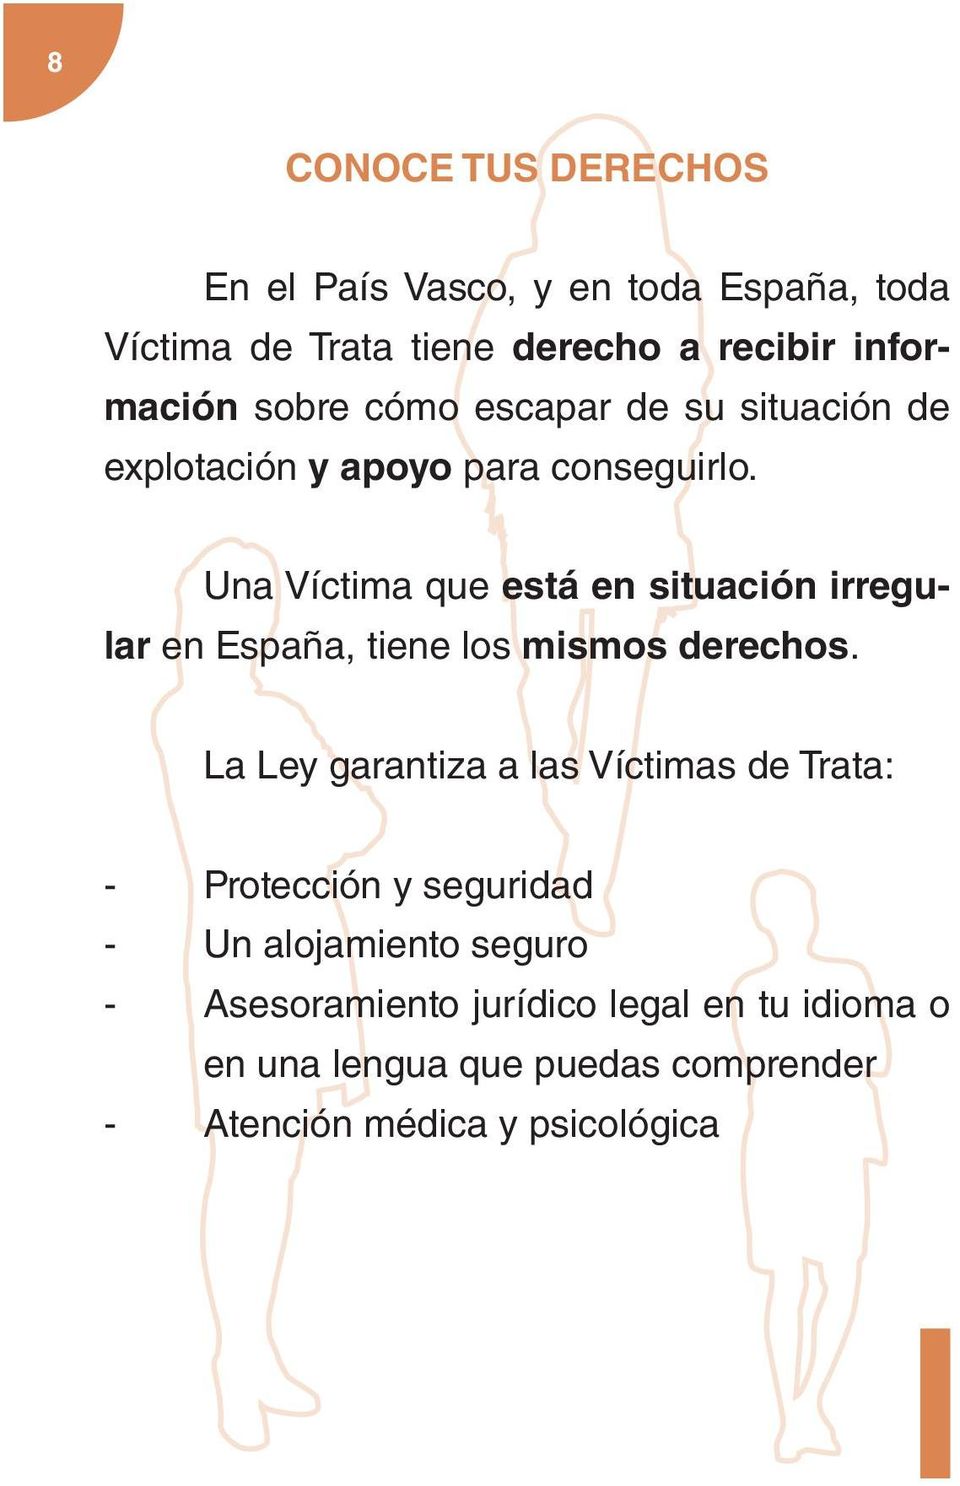 Una Víctima que está en situación irregular en España, tiene los mismos derechos.